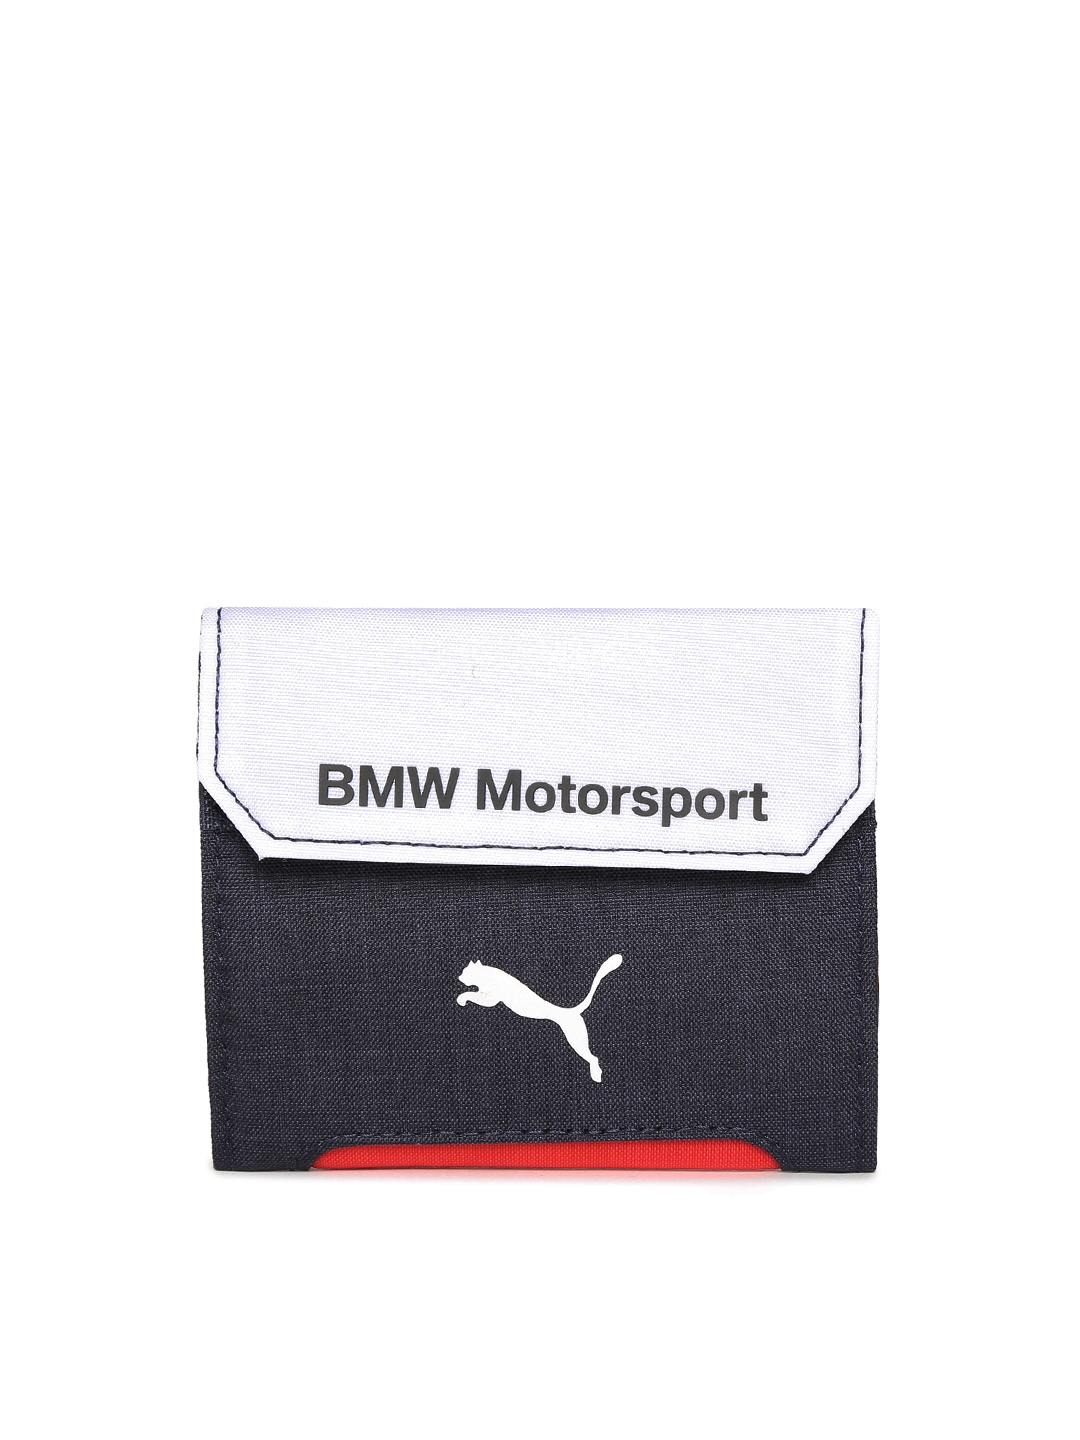 puma bmw motorsport unisex wallet